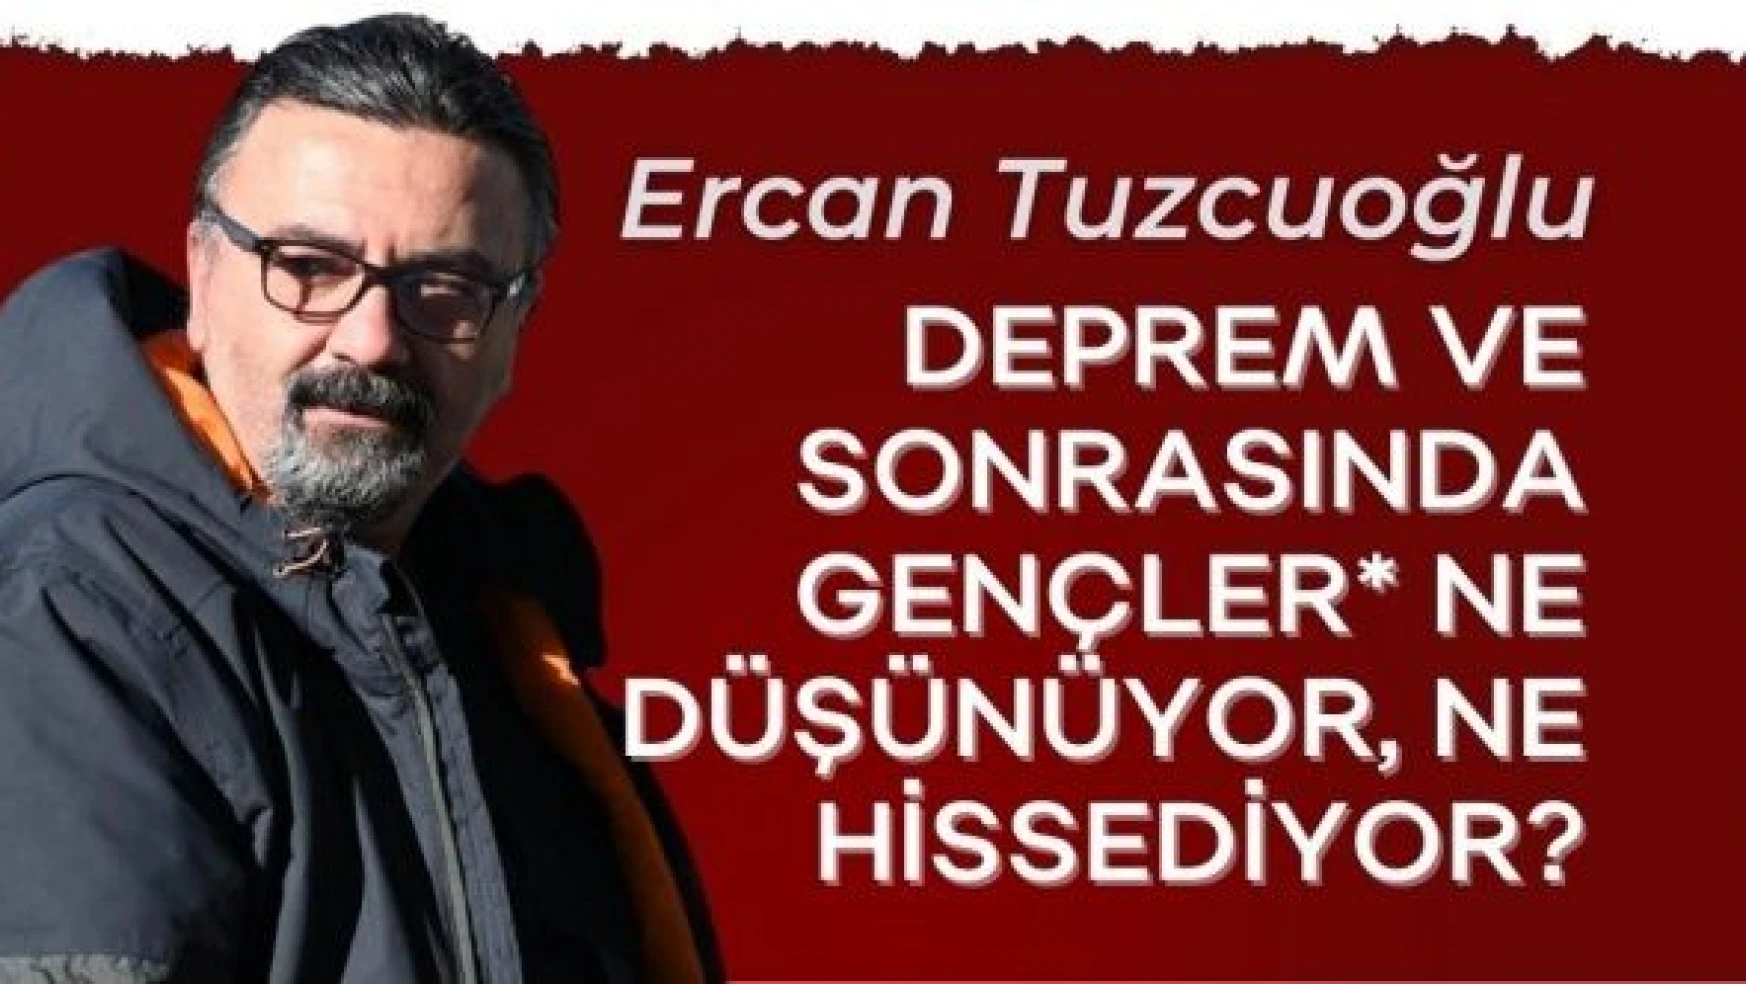 Eğitim ve Aile Danışmanı Ercan Tuzcuoğlu yazdı...